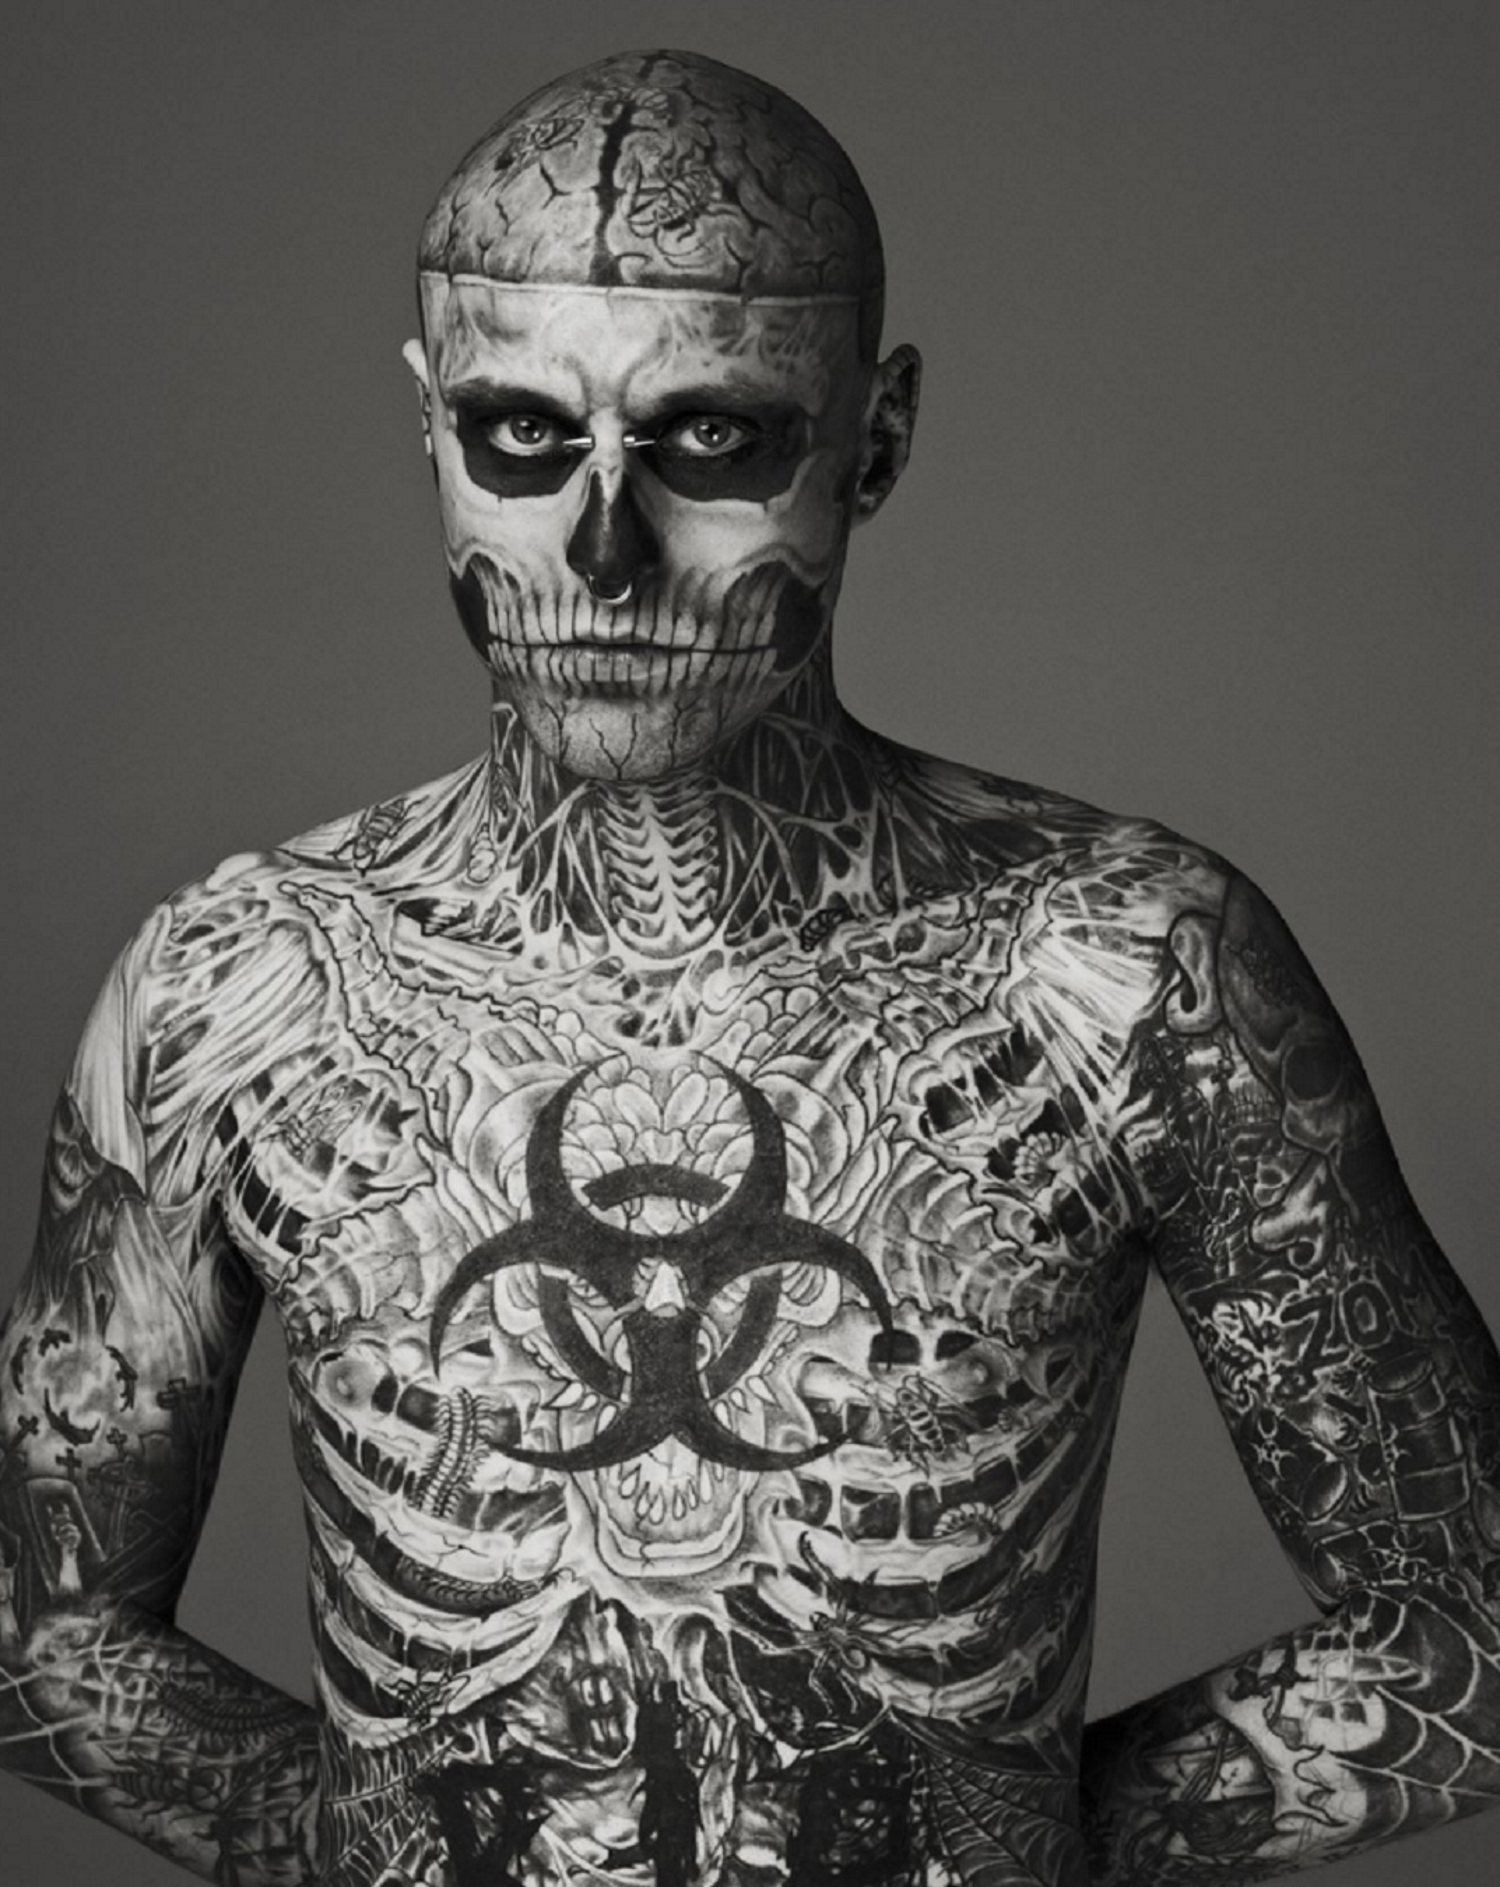 Conmoción en el mundo de la moda por el suicidio del modelo Zombie Boy